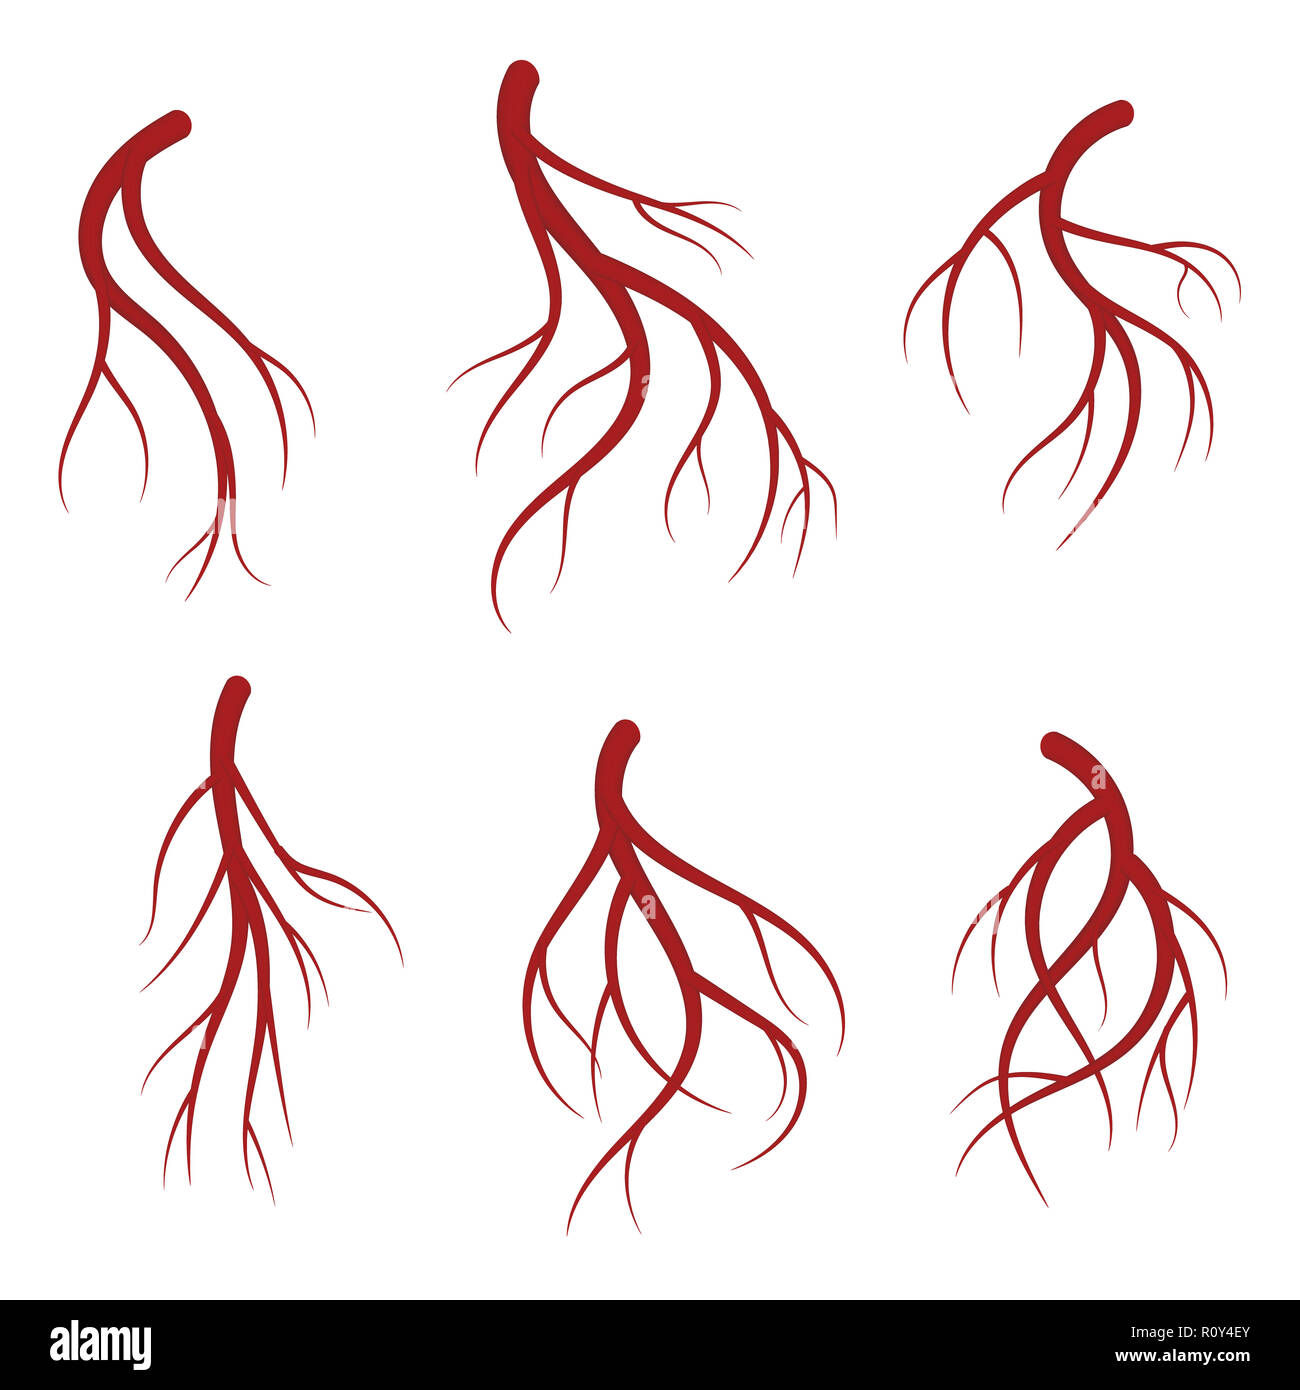 Les veines, vaisseaux sanguins rouges ensemble. Illustration médicale réaliste isolé sur fond blanc Banque D'Images